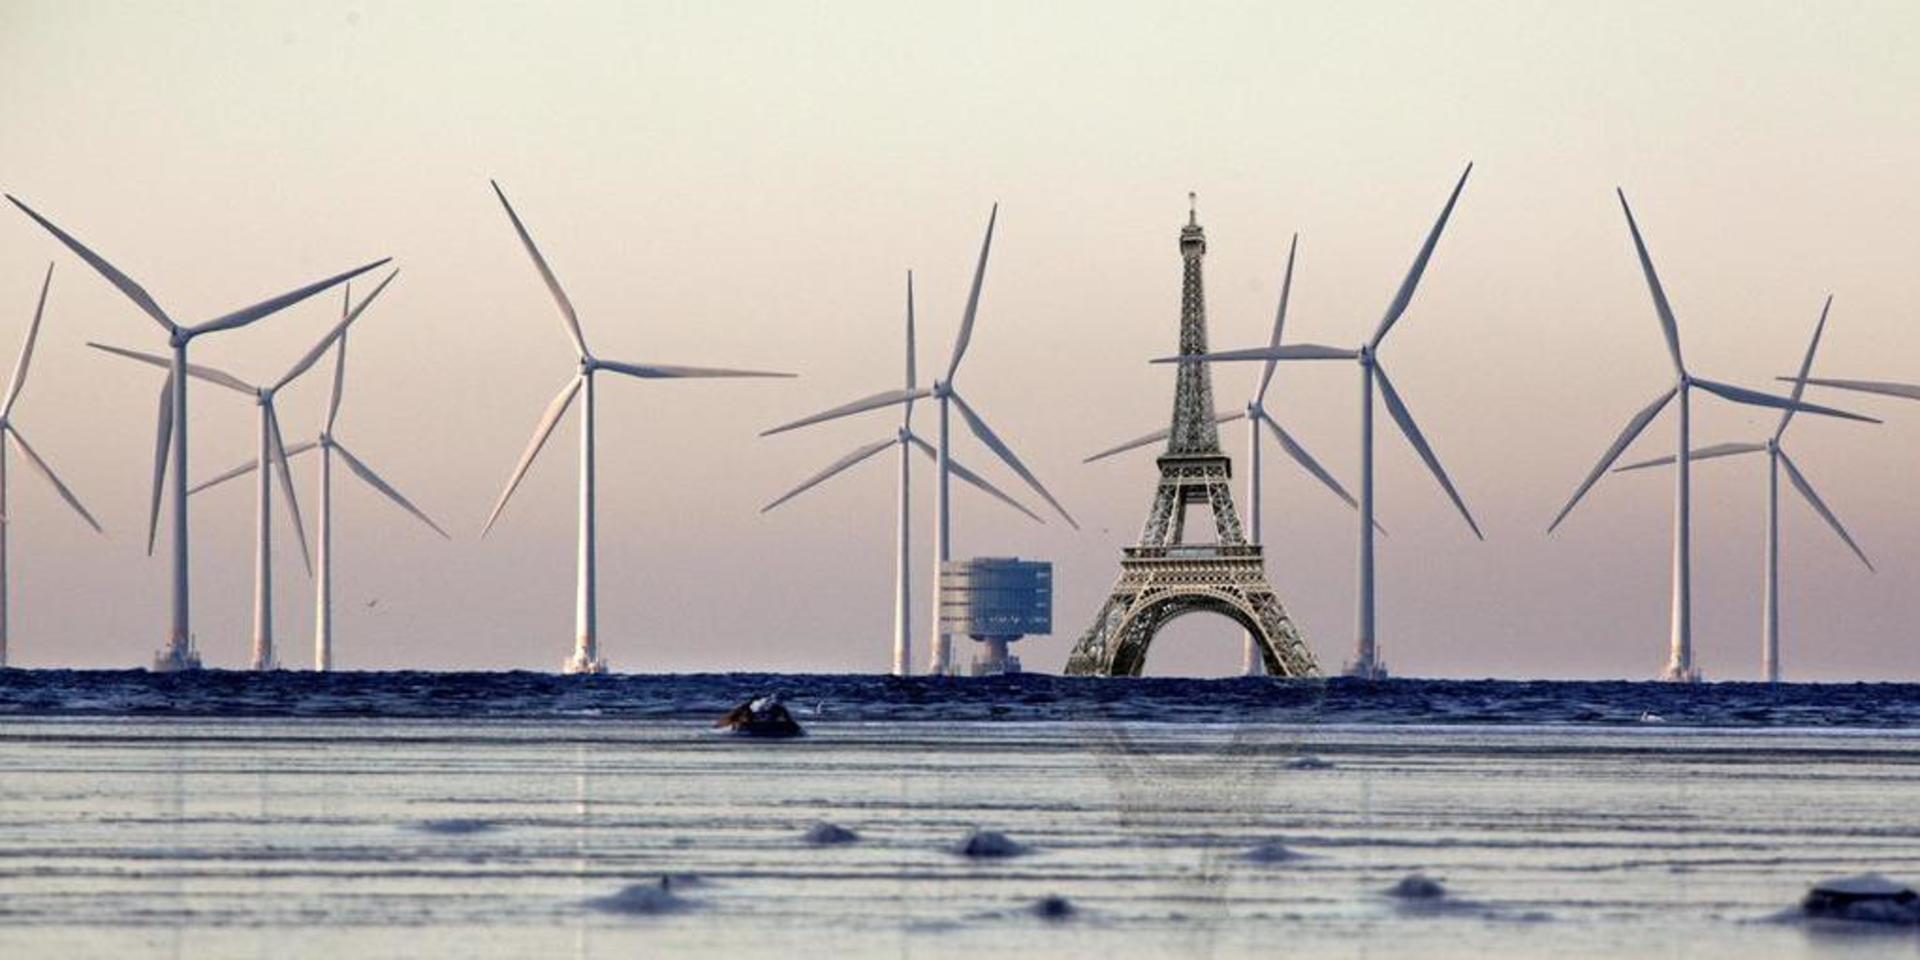 Det är det här bildmontaget av framtidens havsbaserade vindkraft som skrämmer insändarskribenten.